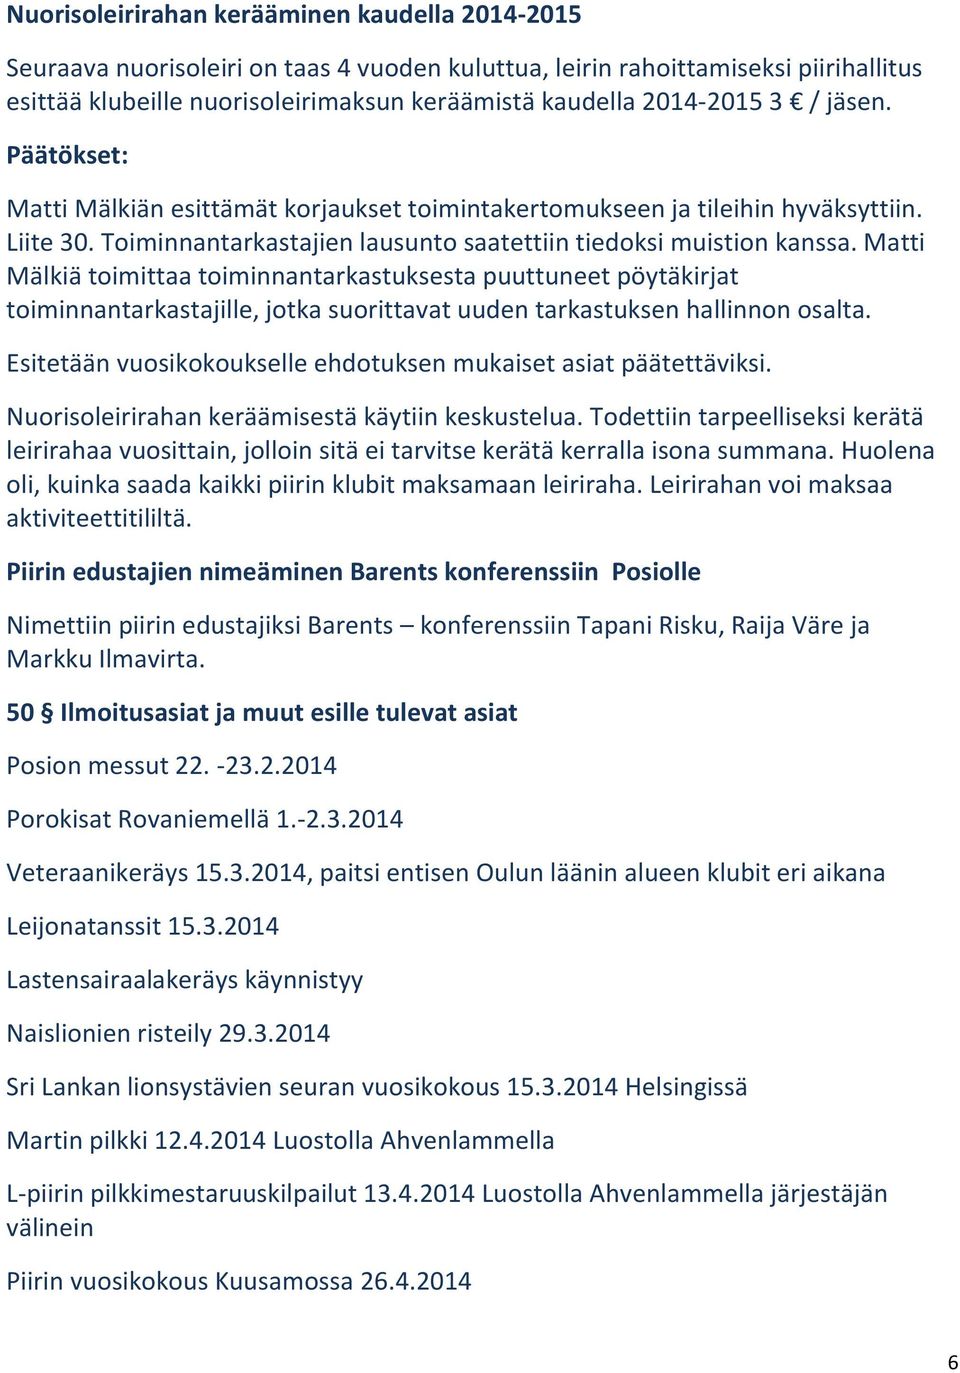 Matti Mälkiä toimittaa toiminnantarkastuksesta puuttuneet pöytäkirjat toiminnantarkastajille, jotka suorittavat uuden tarkastuksen hallinnon osalta.